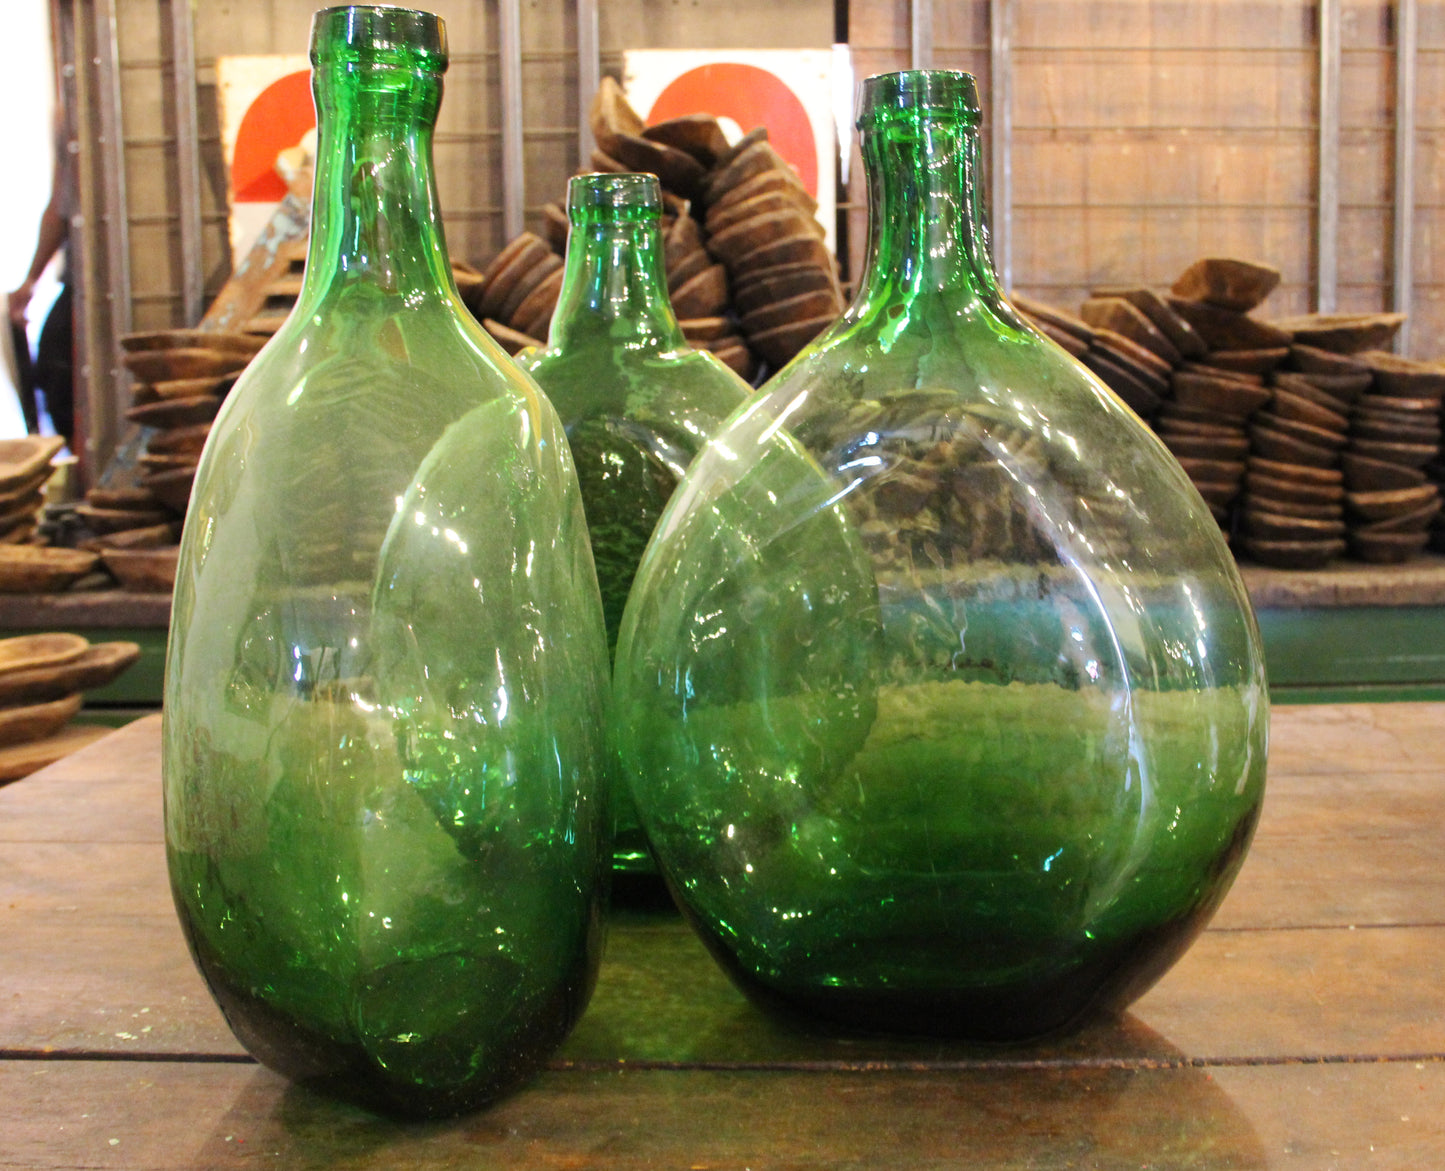 Demijohns -round green bottles